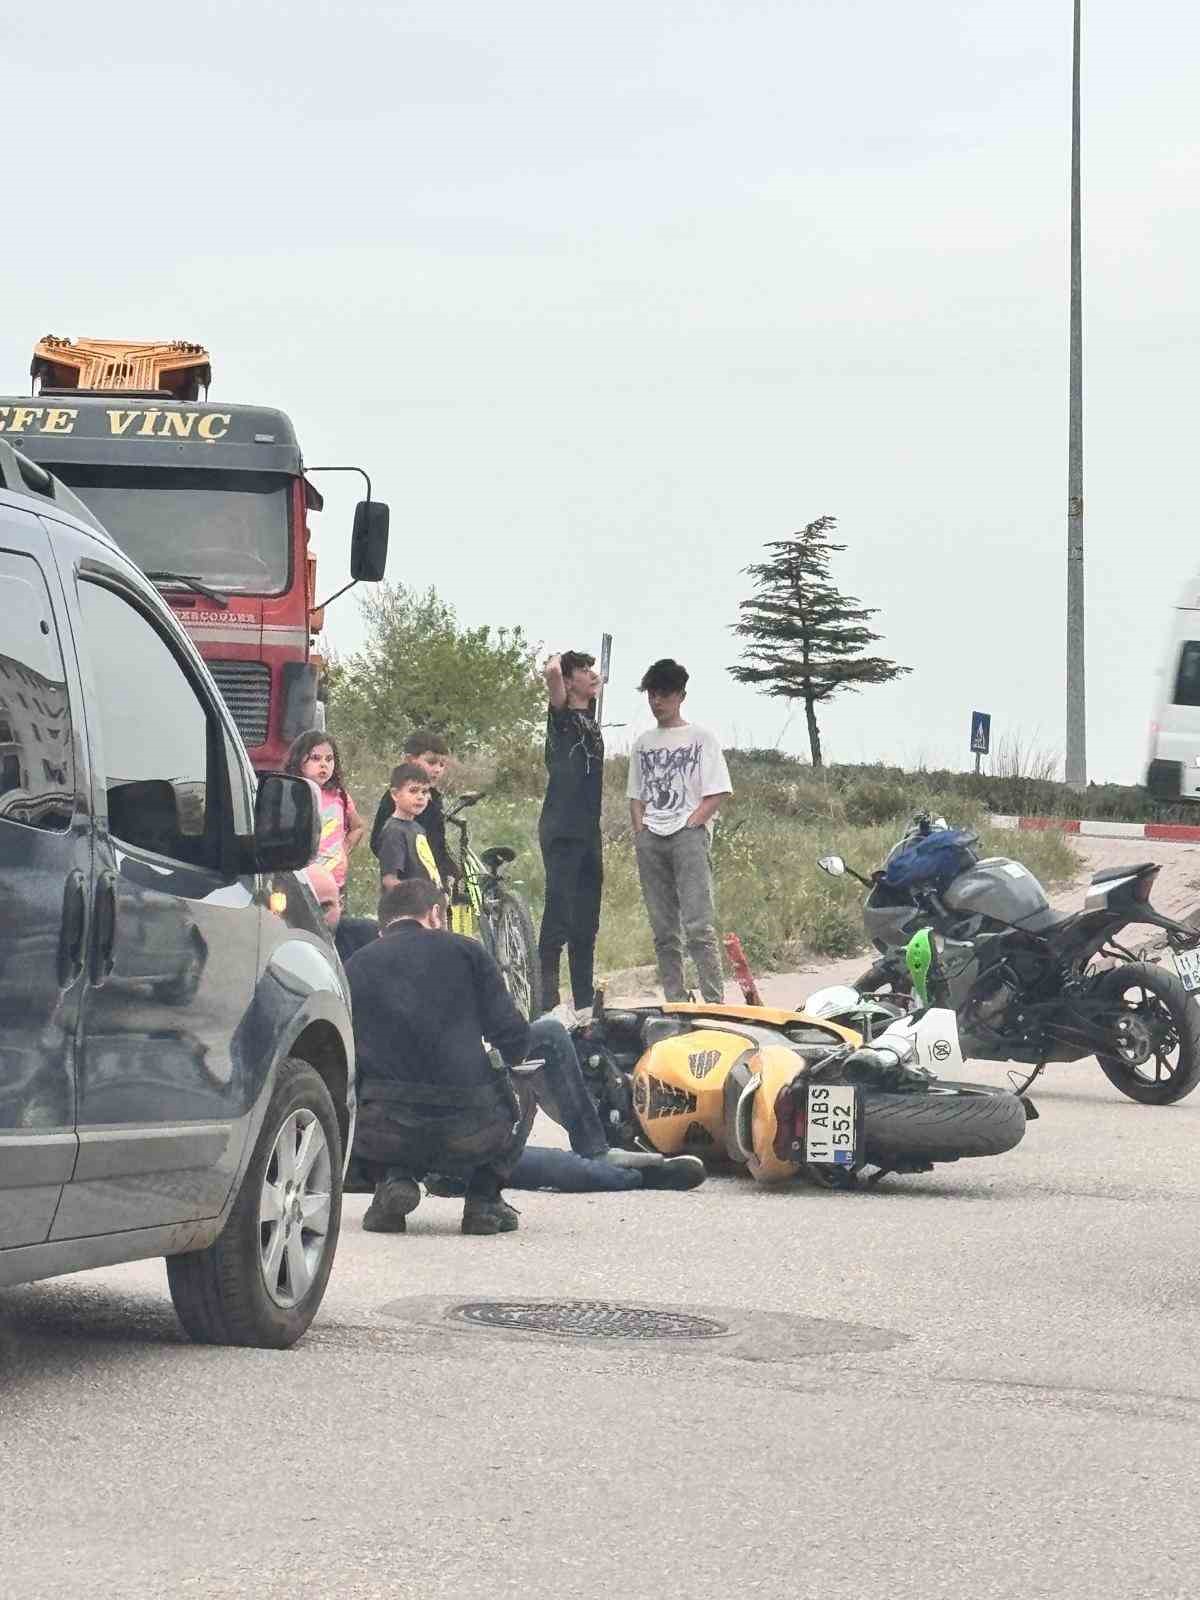 Bilecik’te motosikletlerin çarpışması sonucu 1 kişi yaralandı
